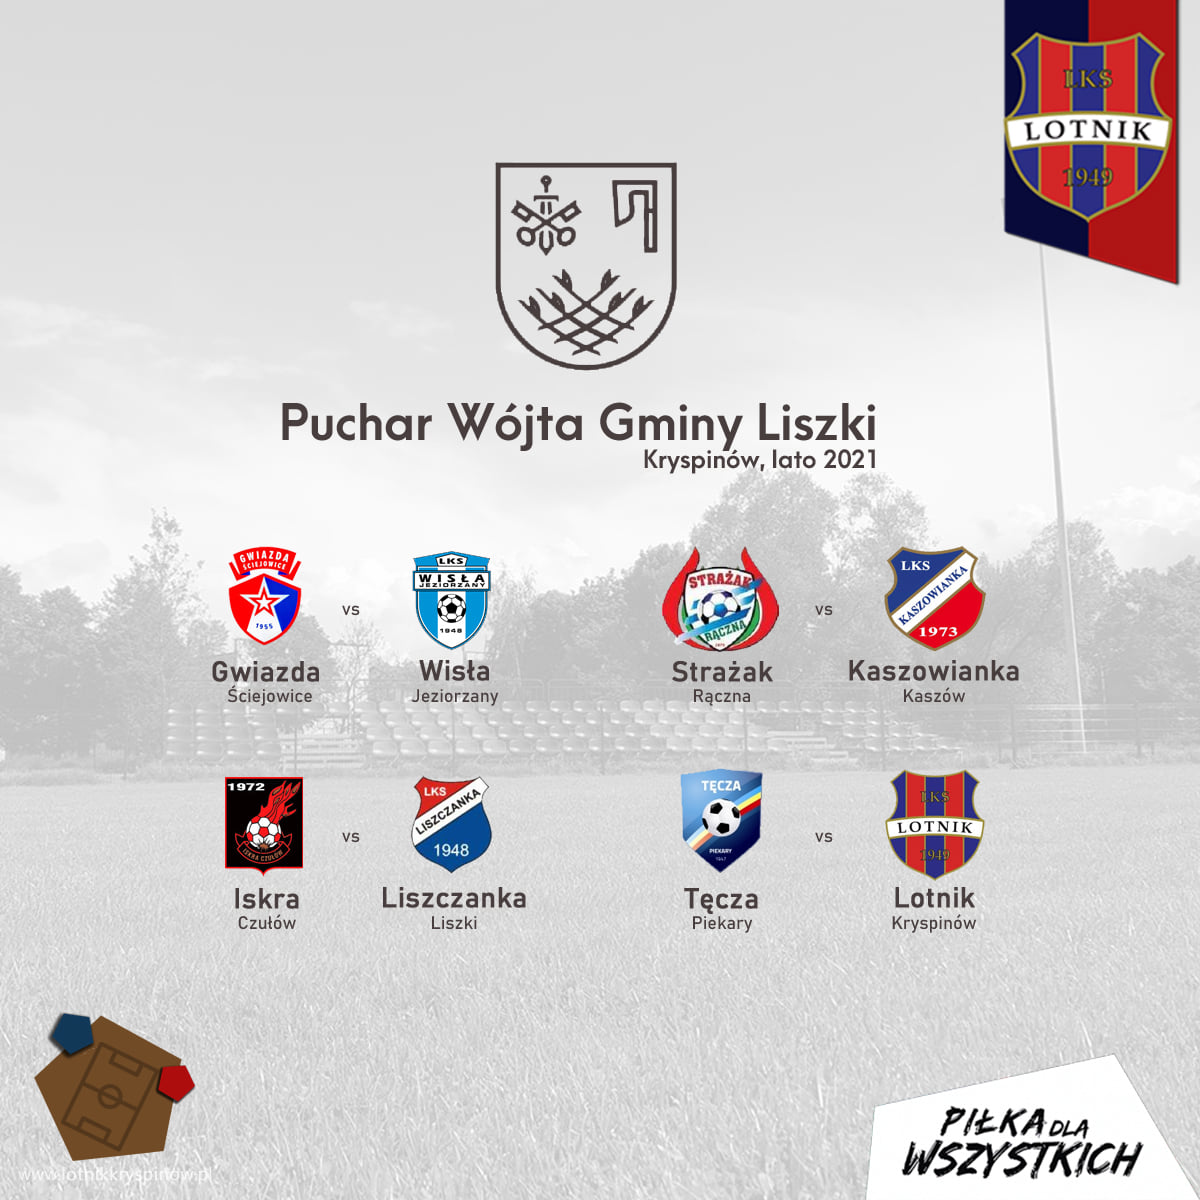 Puchar Wójta Gminy Liszki 2021 w piłce nożnej - Kryspinów